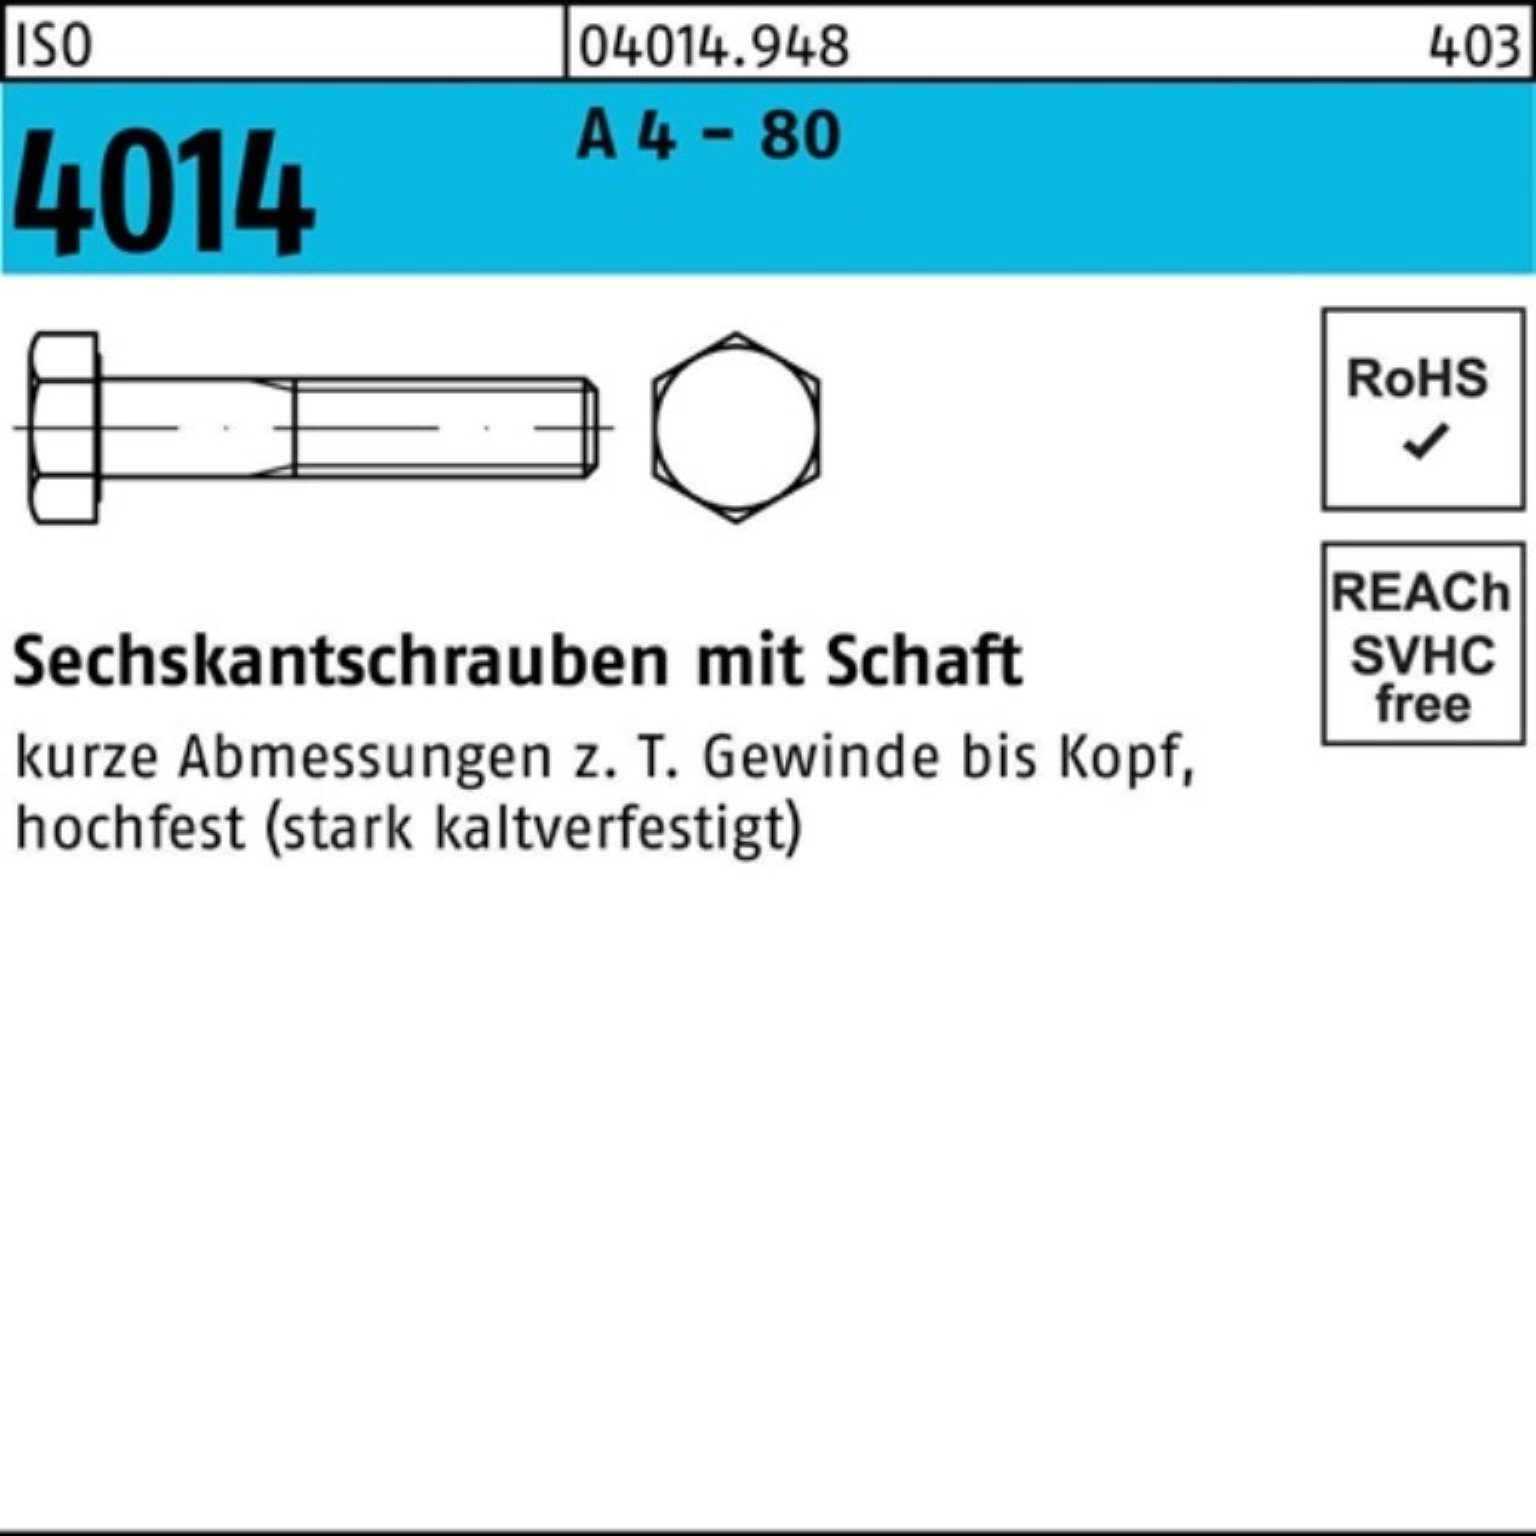 Bufab Sechskantschraube 100er Pack - Stü ISO 50 A 4 M10x 4014 Schaft Sechskantschraube 100 80